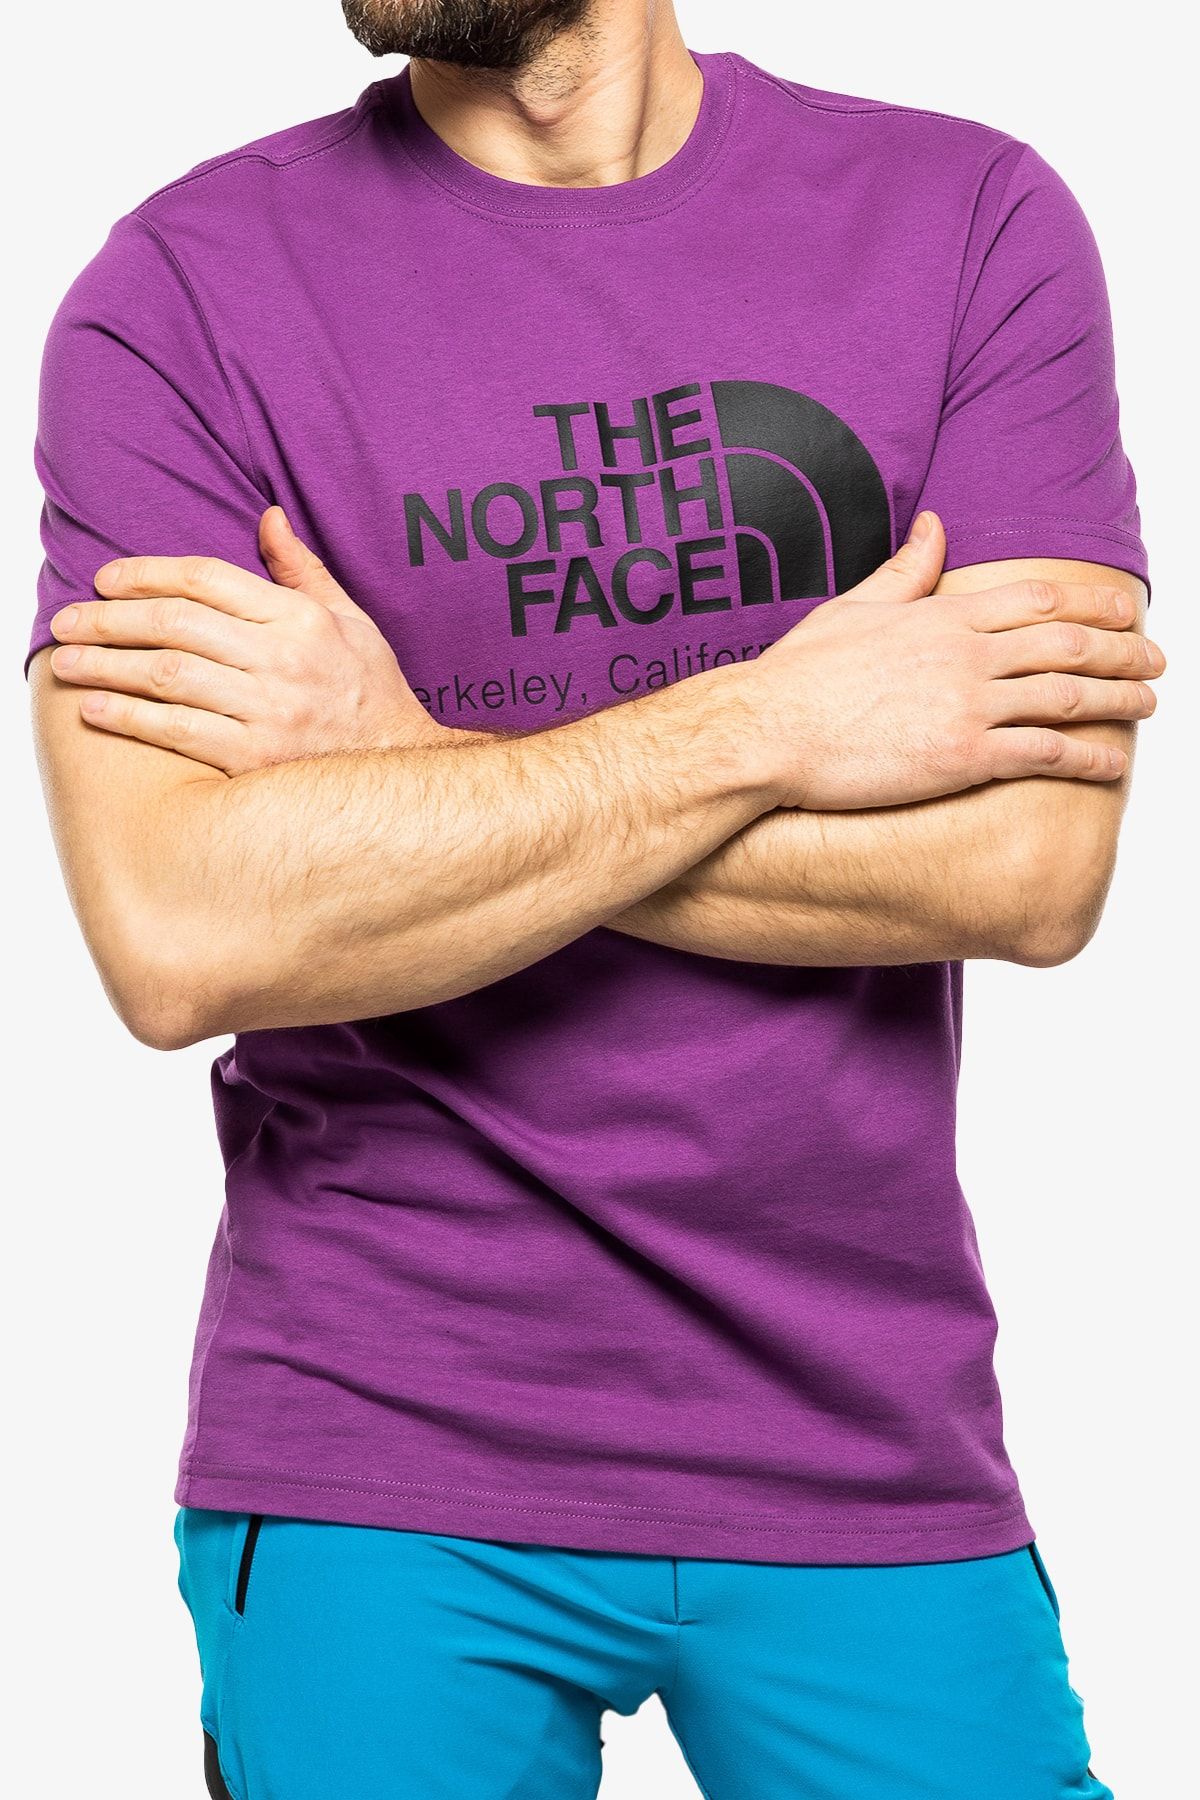 The North Face Berkeley Calıfornıa Erkek Mor Tişört